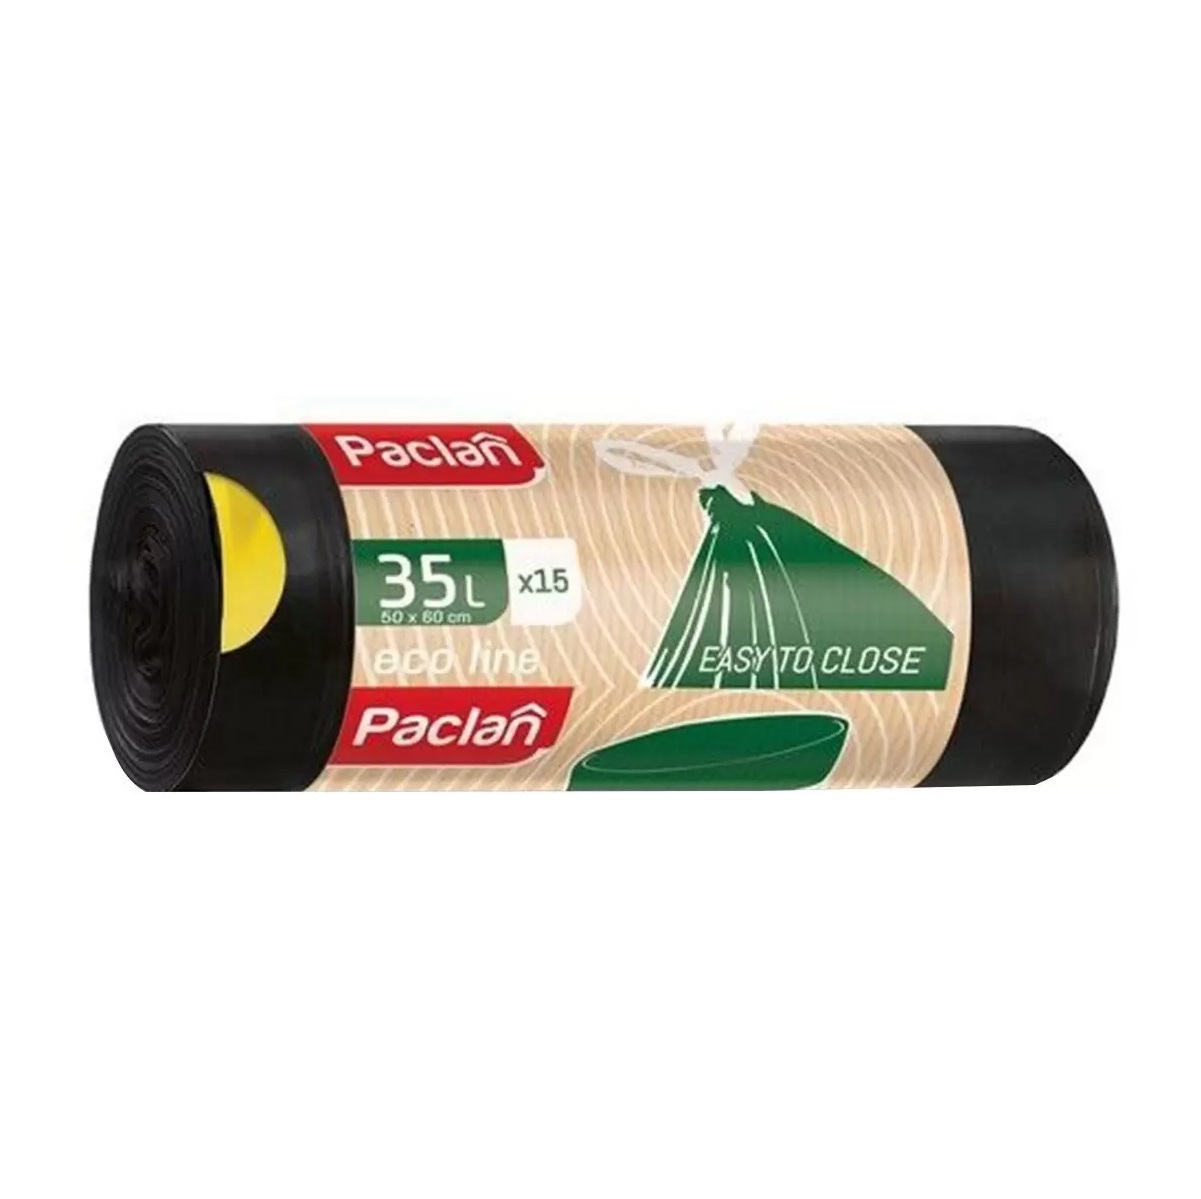 Мешки мусорные PACLAN Eco line 35л 15шт мешки мусорные paclan premium 35л 15шт